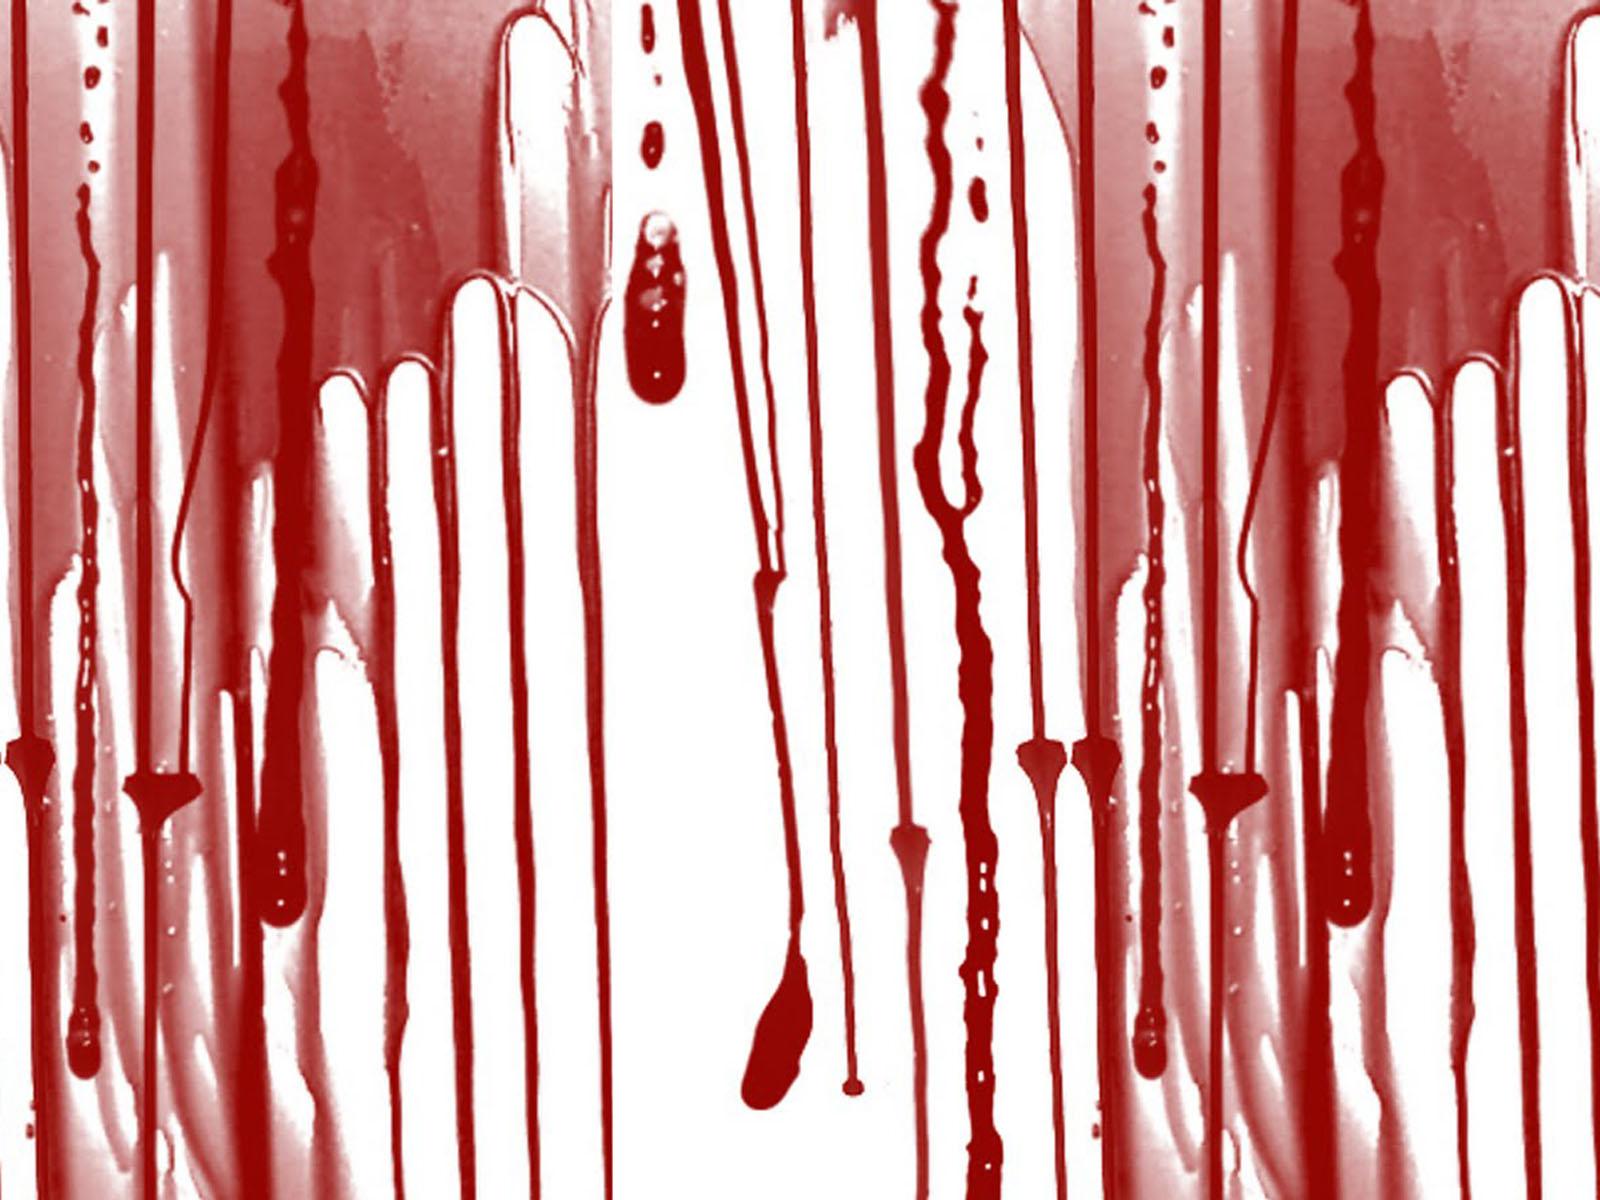 100% HDQ Blood Wallpaper. DeskK HDQ Cover Wallpaper